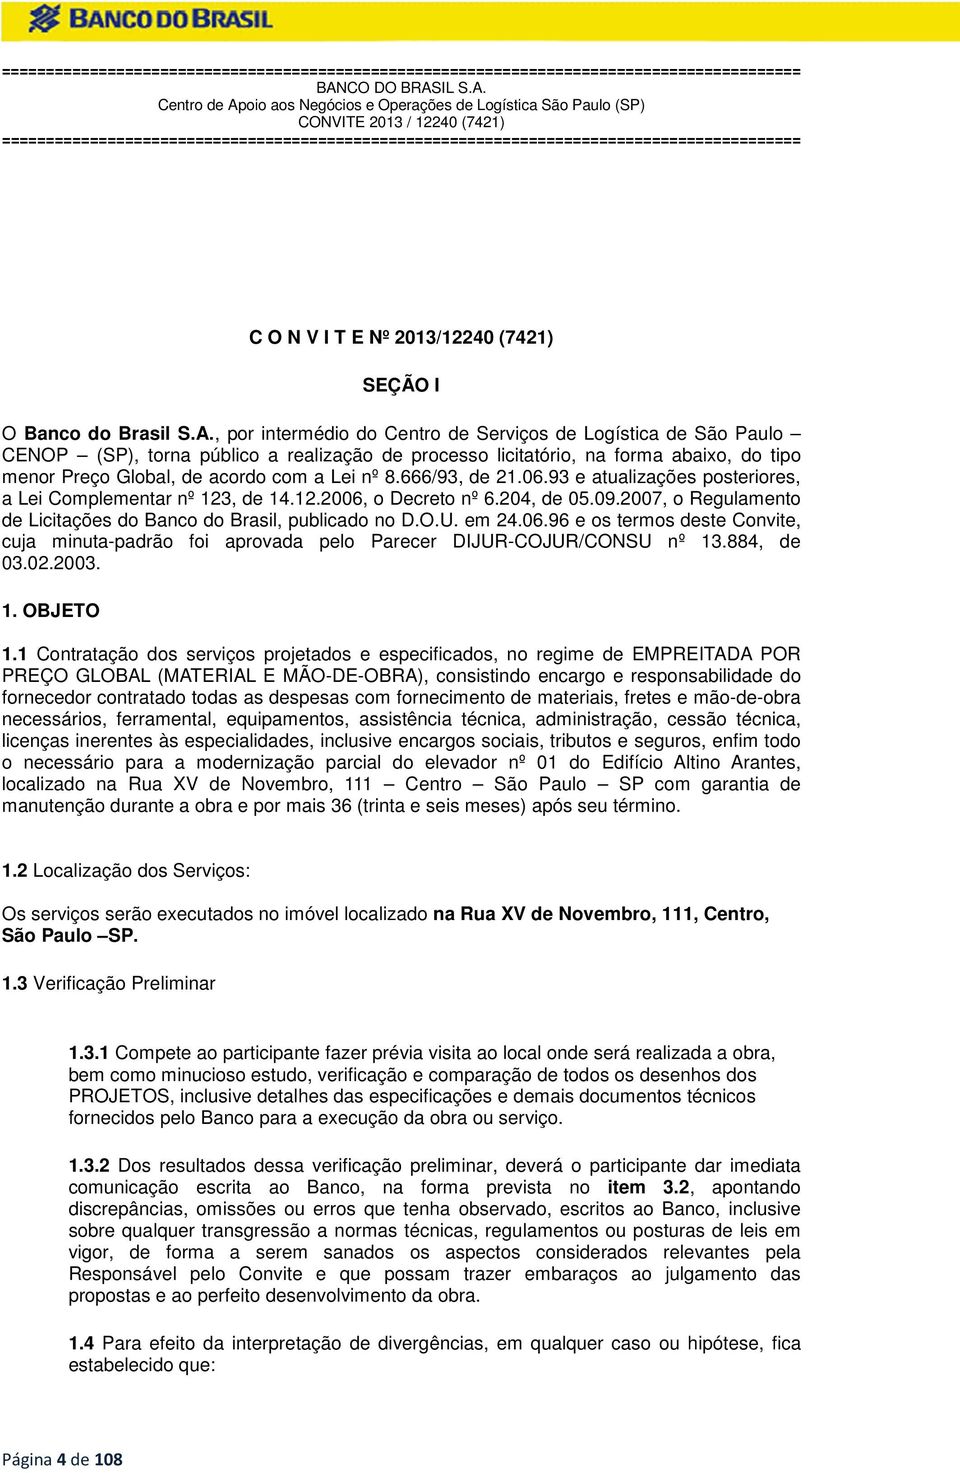 666/93, de 21.06.93 e atualizações posteriores, a Lei Complementar nº 123, de 14.12.2006, o Decreto nº 6.204, de 05.09.2007, o Regulamento de Licitações do Banco do Brasil, publicado no D.O.U. em 24.